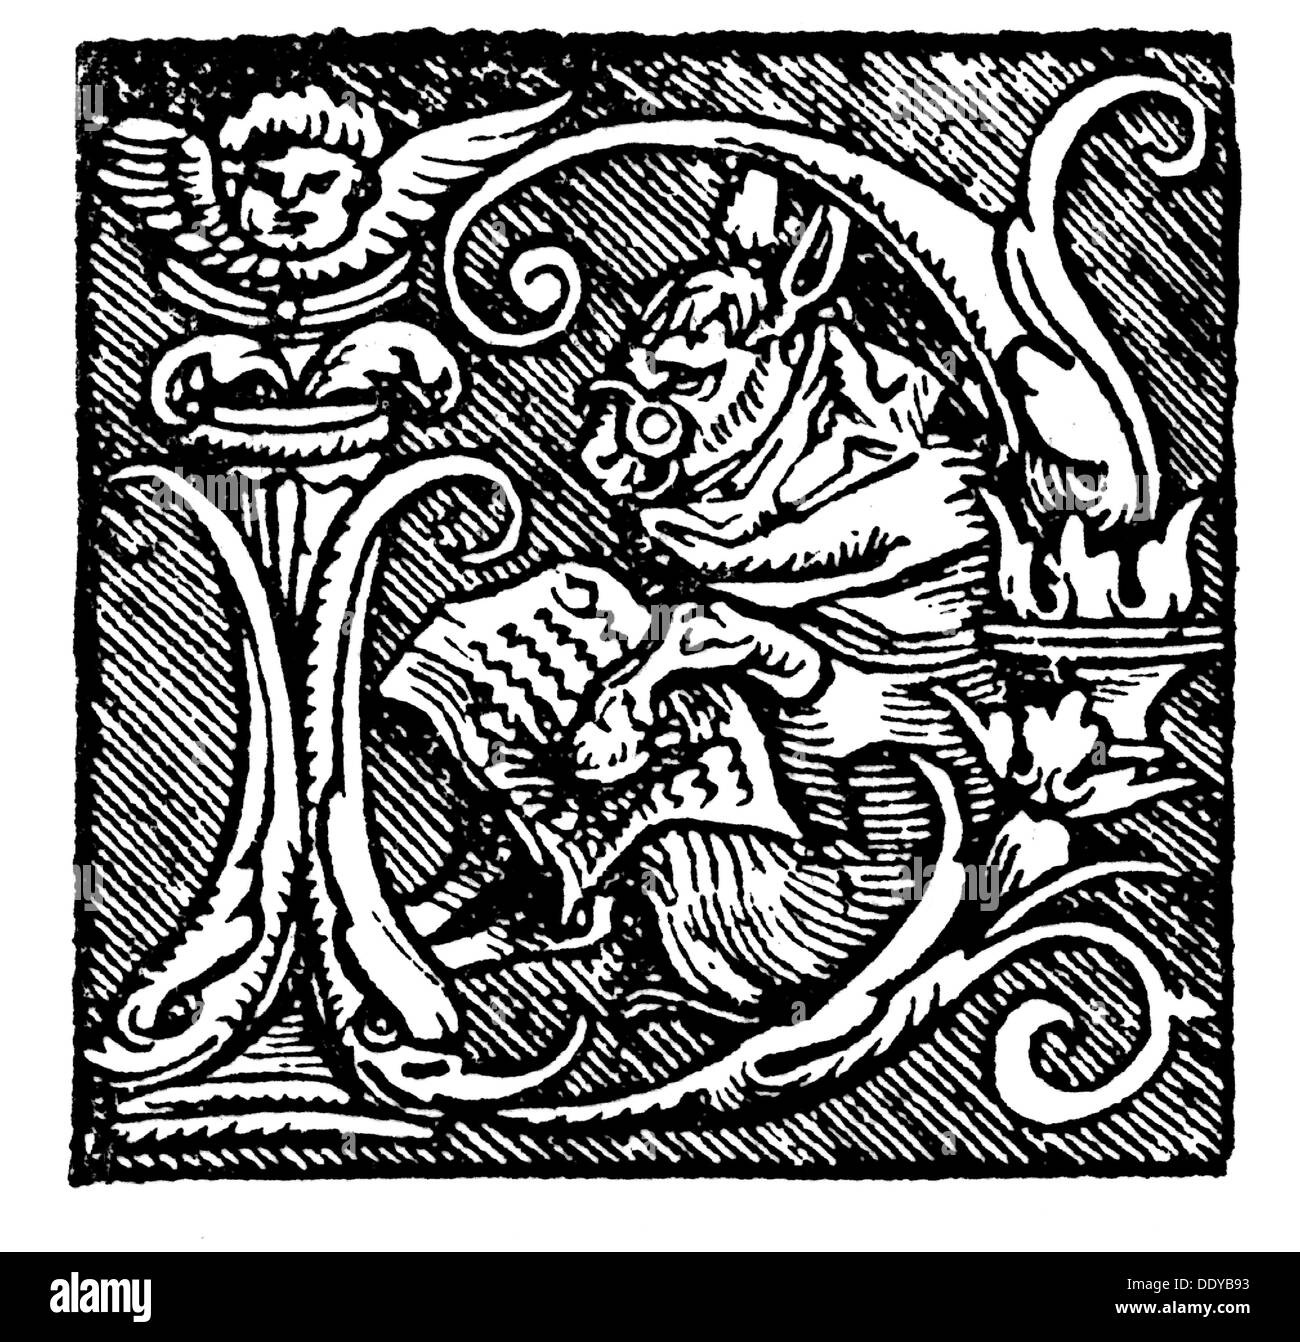 Lutero, Martin, 10.11.1483 - 18.2.1546, riformatore tedesco, opere, 'Zwo predigt vom Zorn' (Due sermoni sull'ira), iniziale, stampa: Joseph Klug, Wittenberg, 1536, Foto Stock